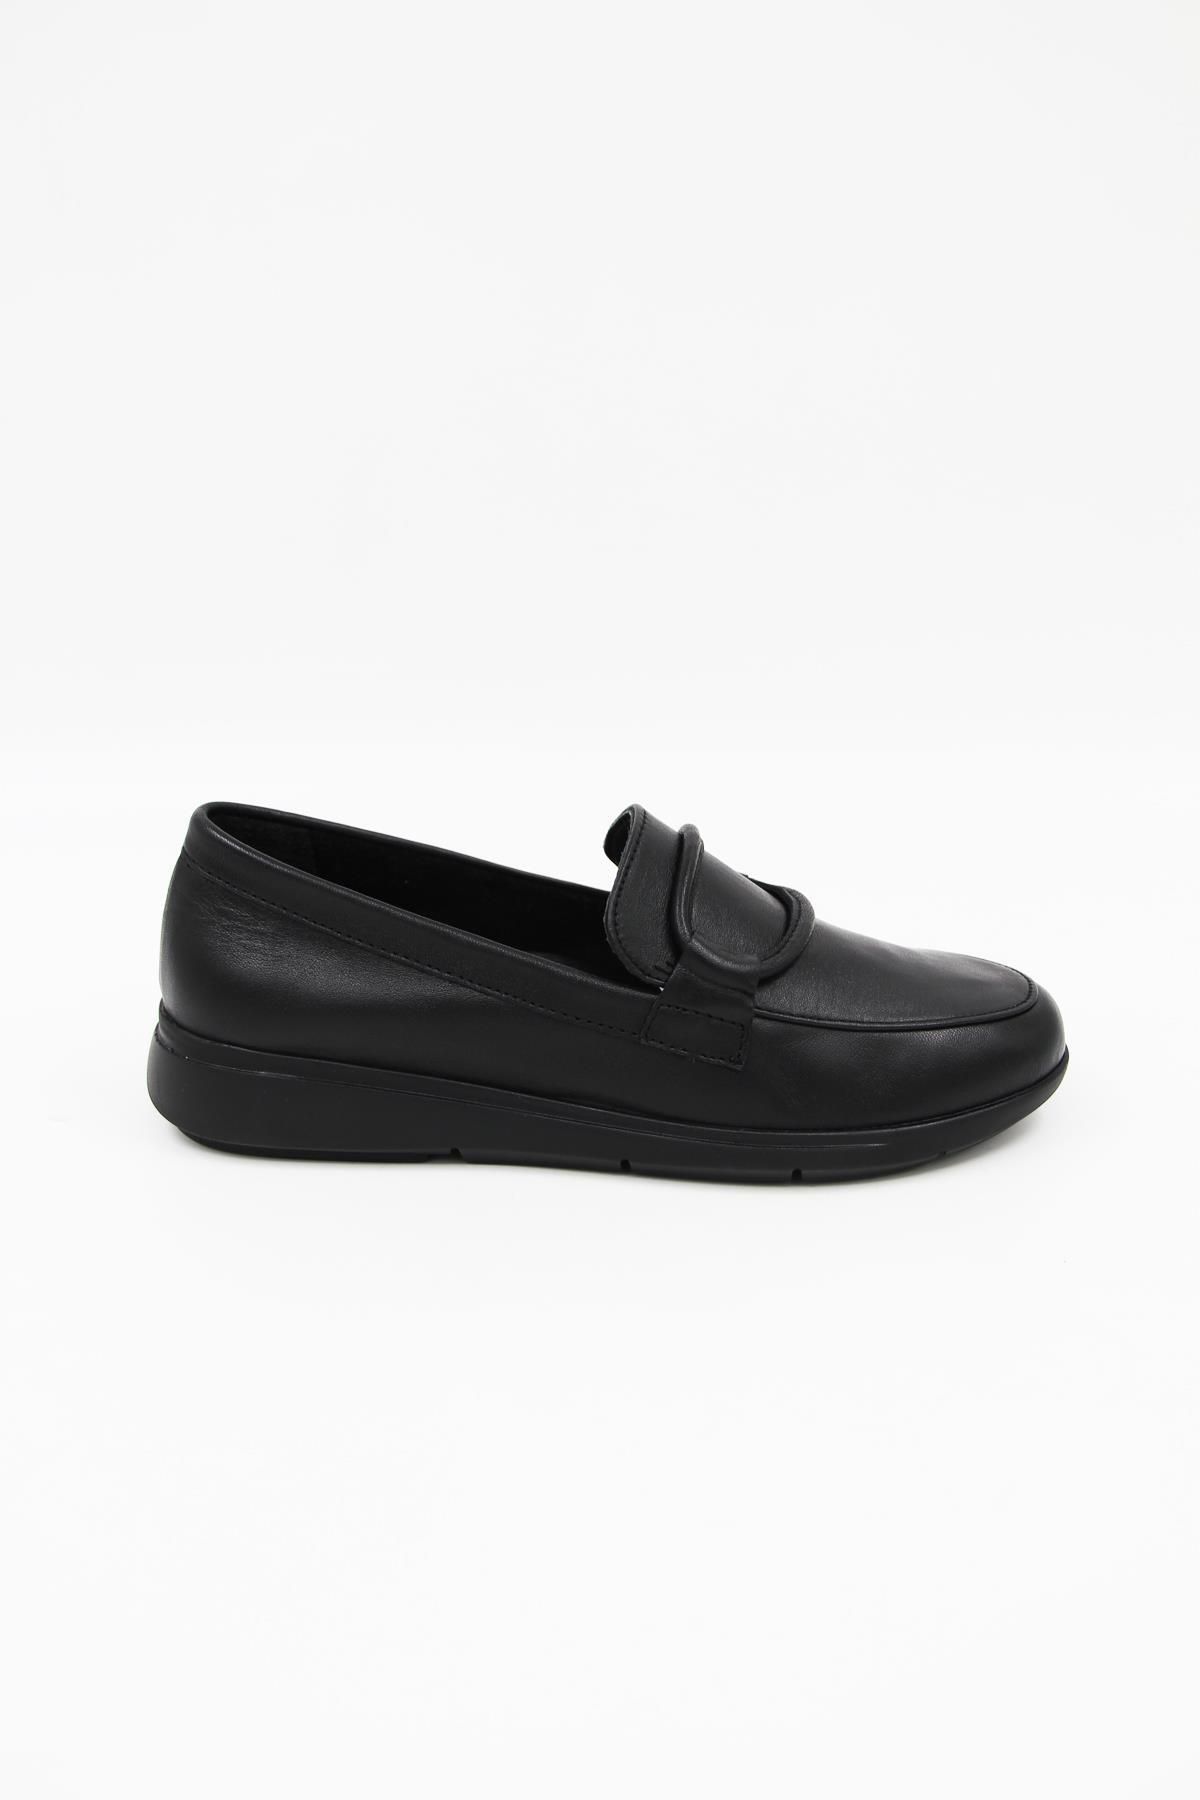 Ceyo 0160 Kadın Comfort Ayakkabı - Siyah